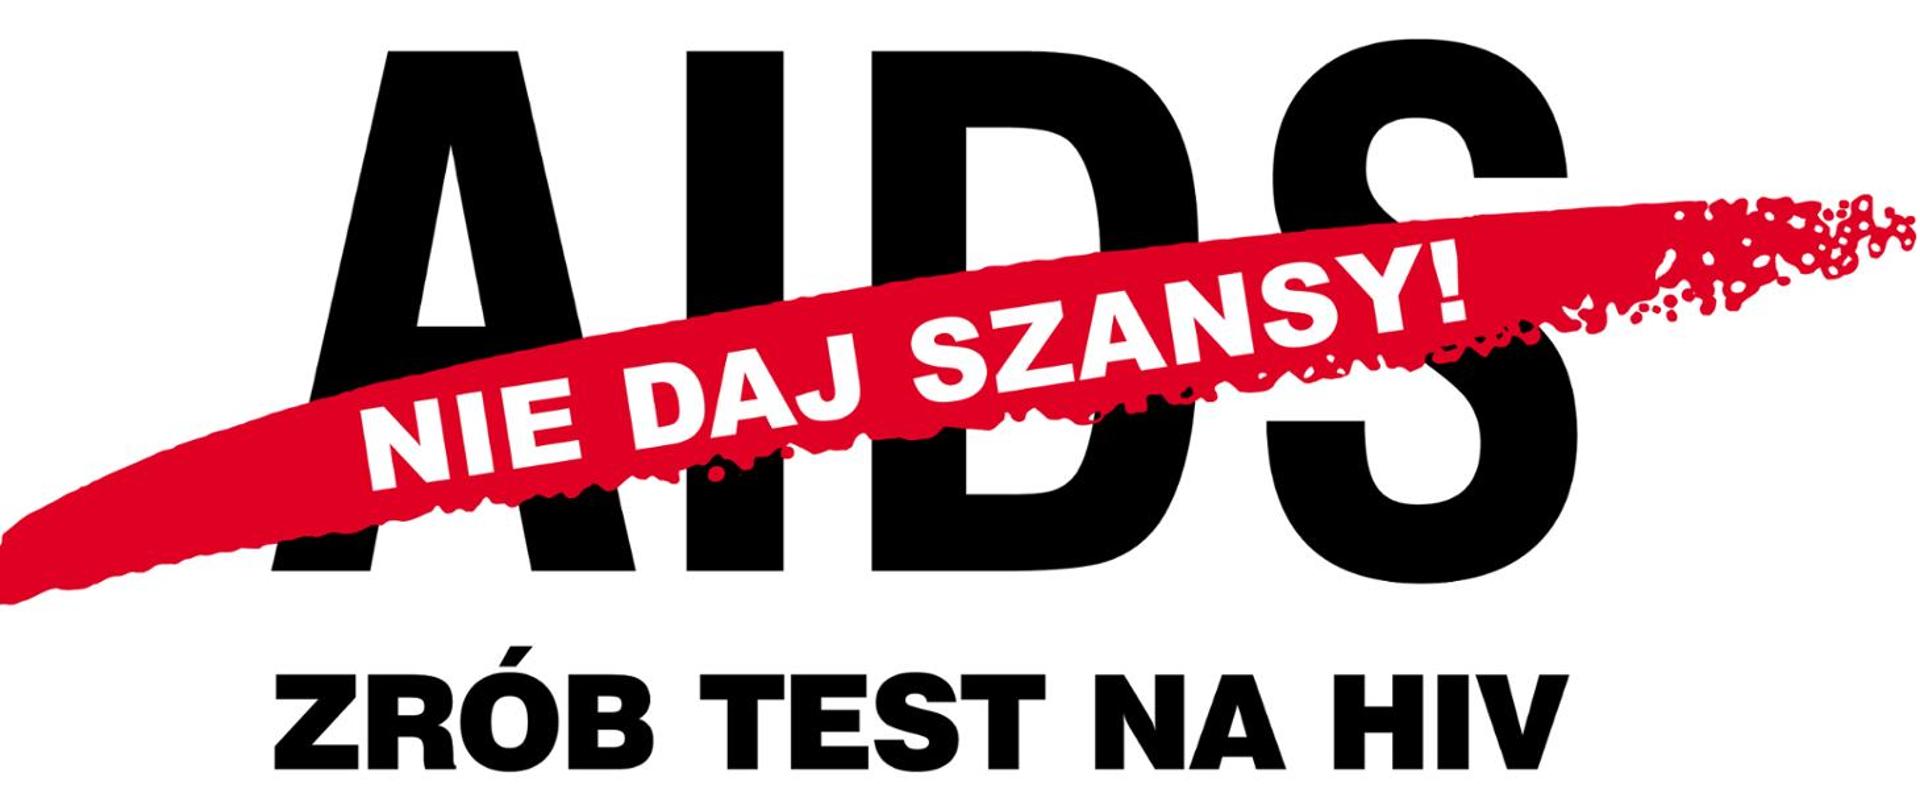 ZRÓB TEST NA HIV czarny tekst na białym tle